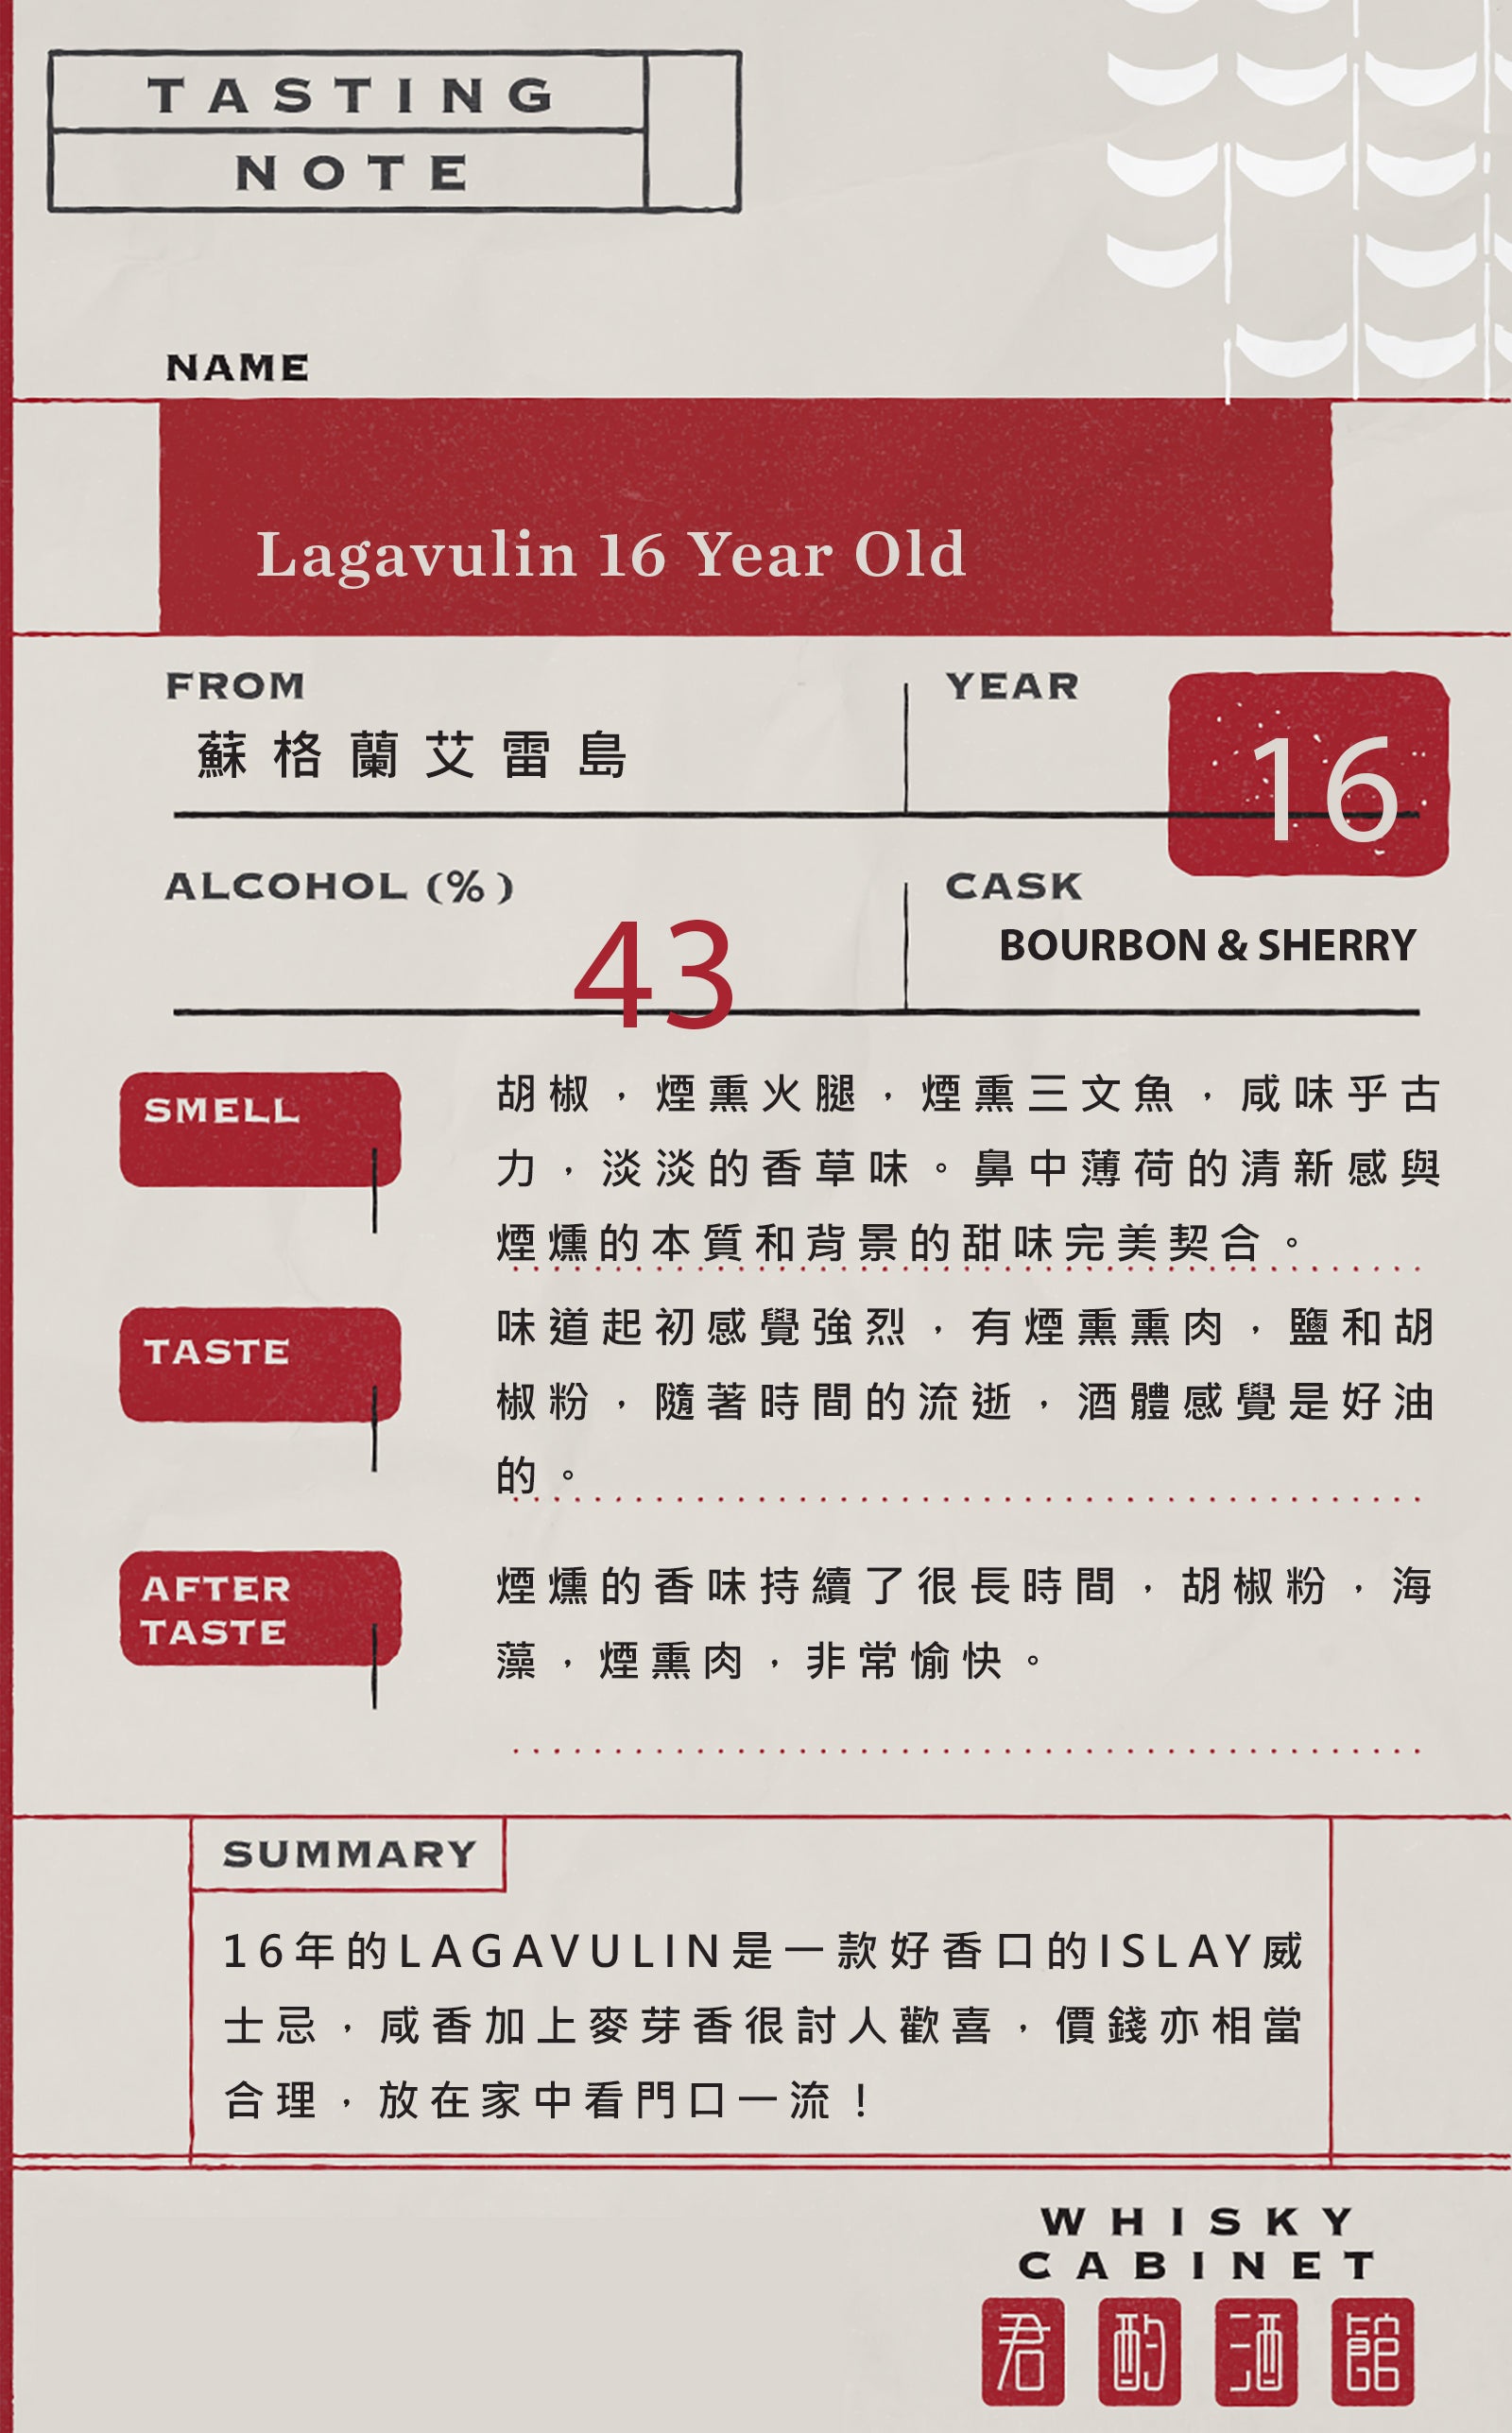 Lagavulin 16 Year Old